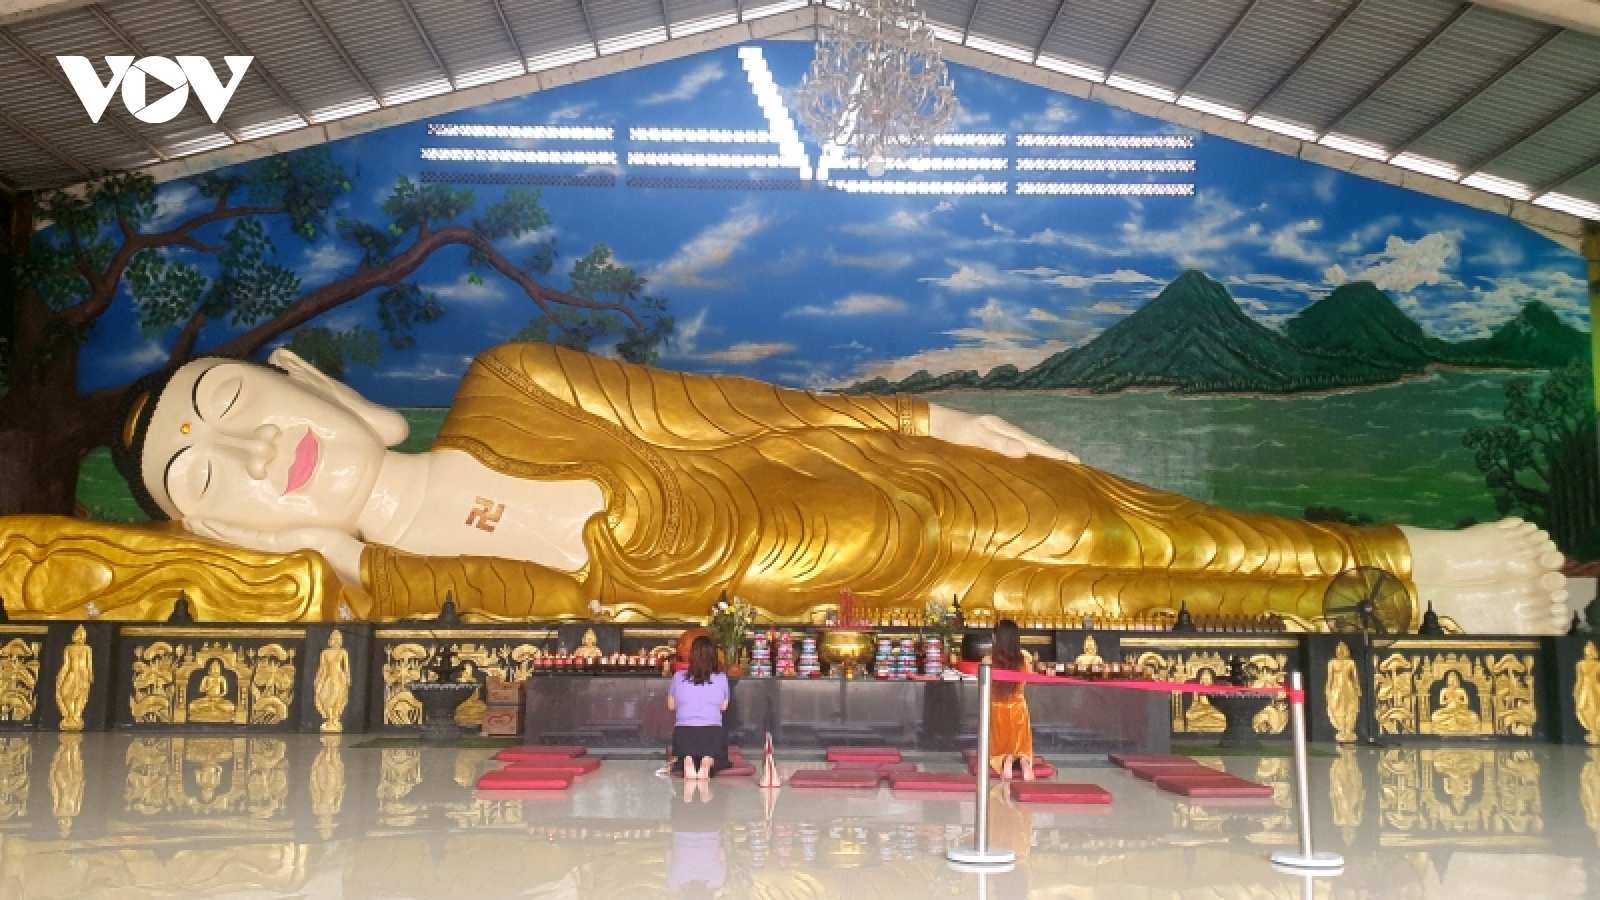 "Tượng Phật nằm" lớn nhất đảo Java - điểm du lịch tâm linh ở Indonesia